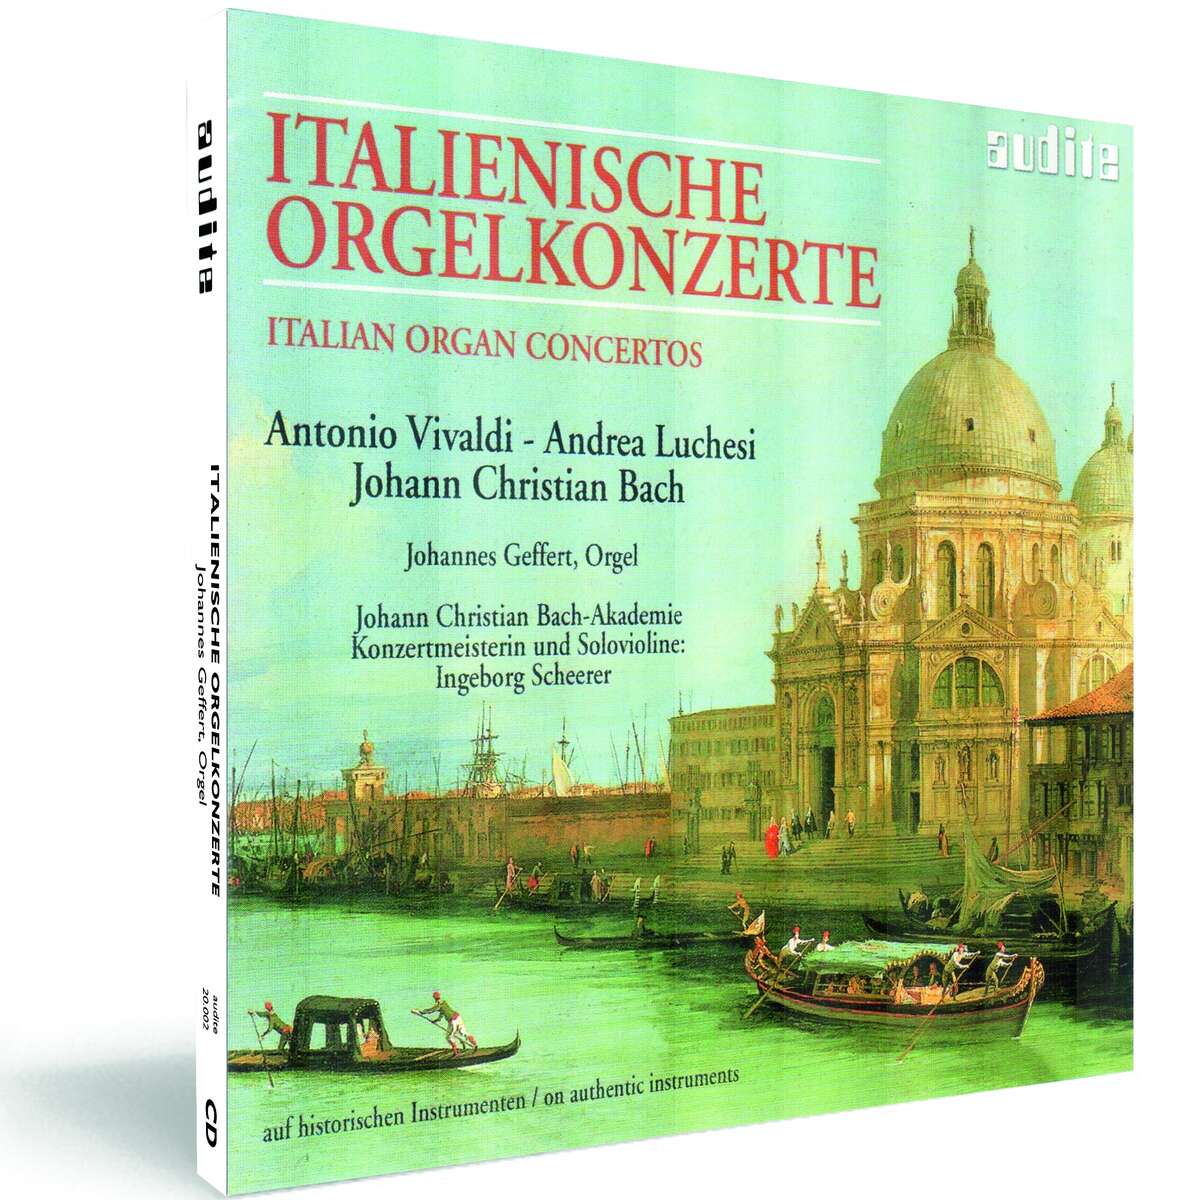 Italian Organ Concertos_Vivaldi, Luchesi, JC... - audite